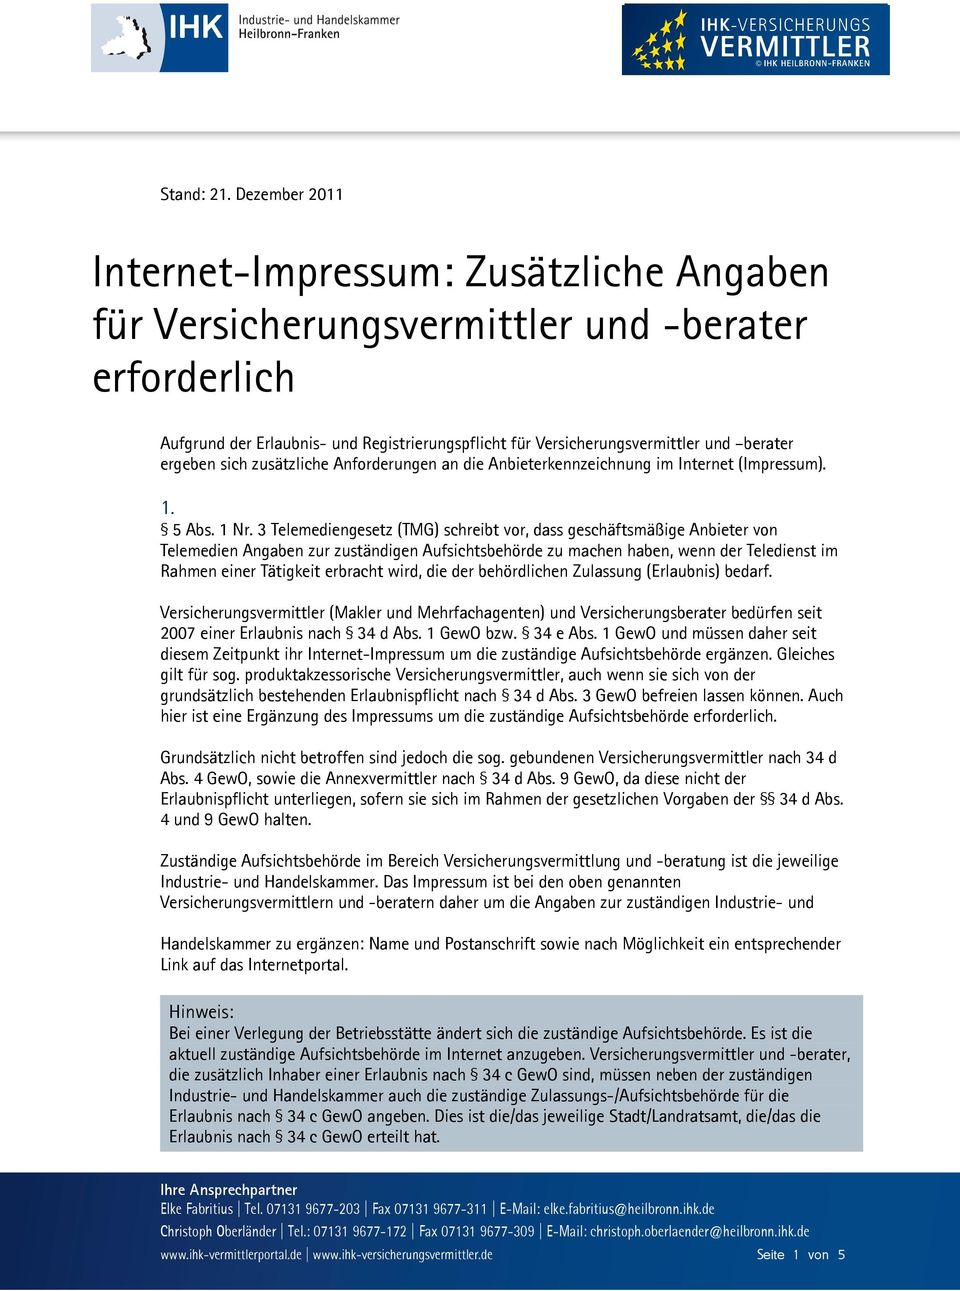 ergeben sich zusätzliche Anforderungen an die Anbieterkennzeichnung im Internet (Impressum). 1. 5 Abs. 1 Nr.